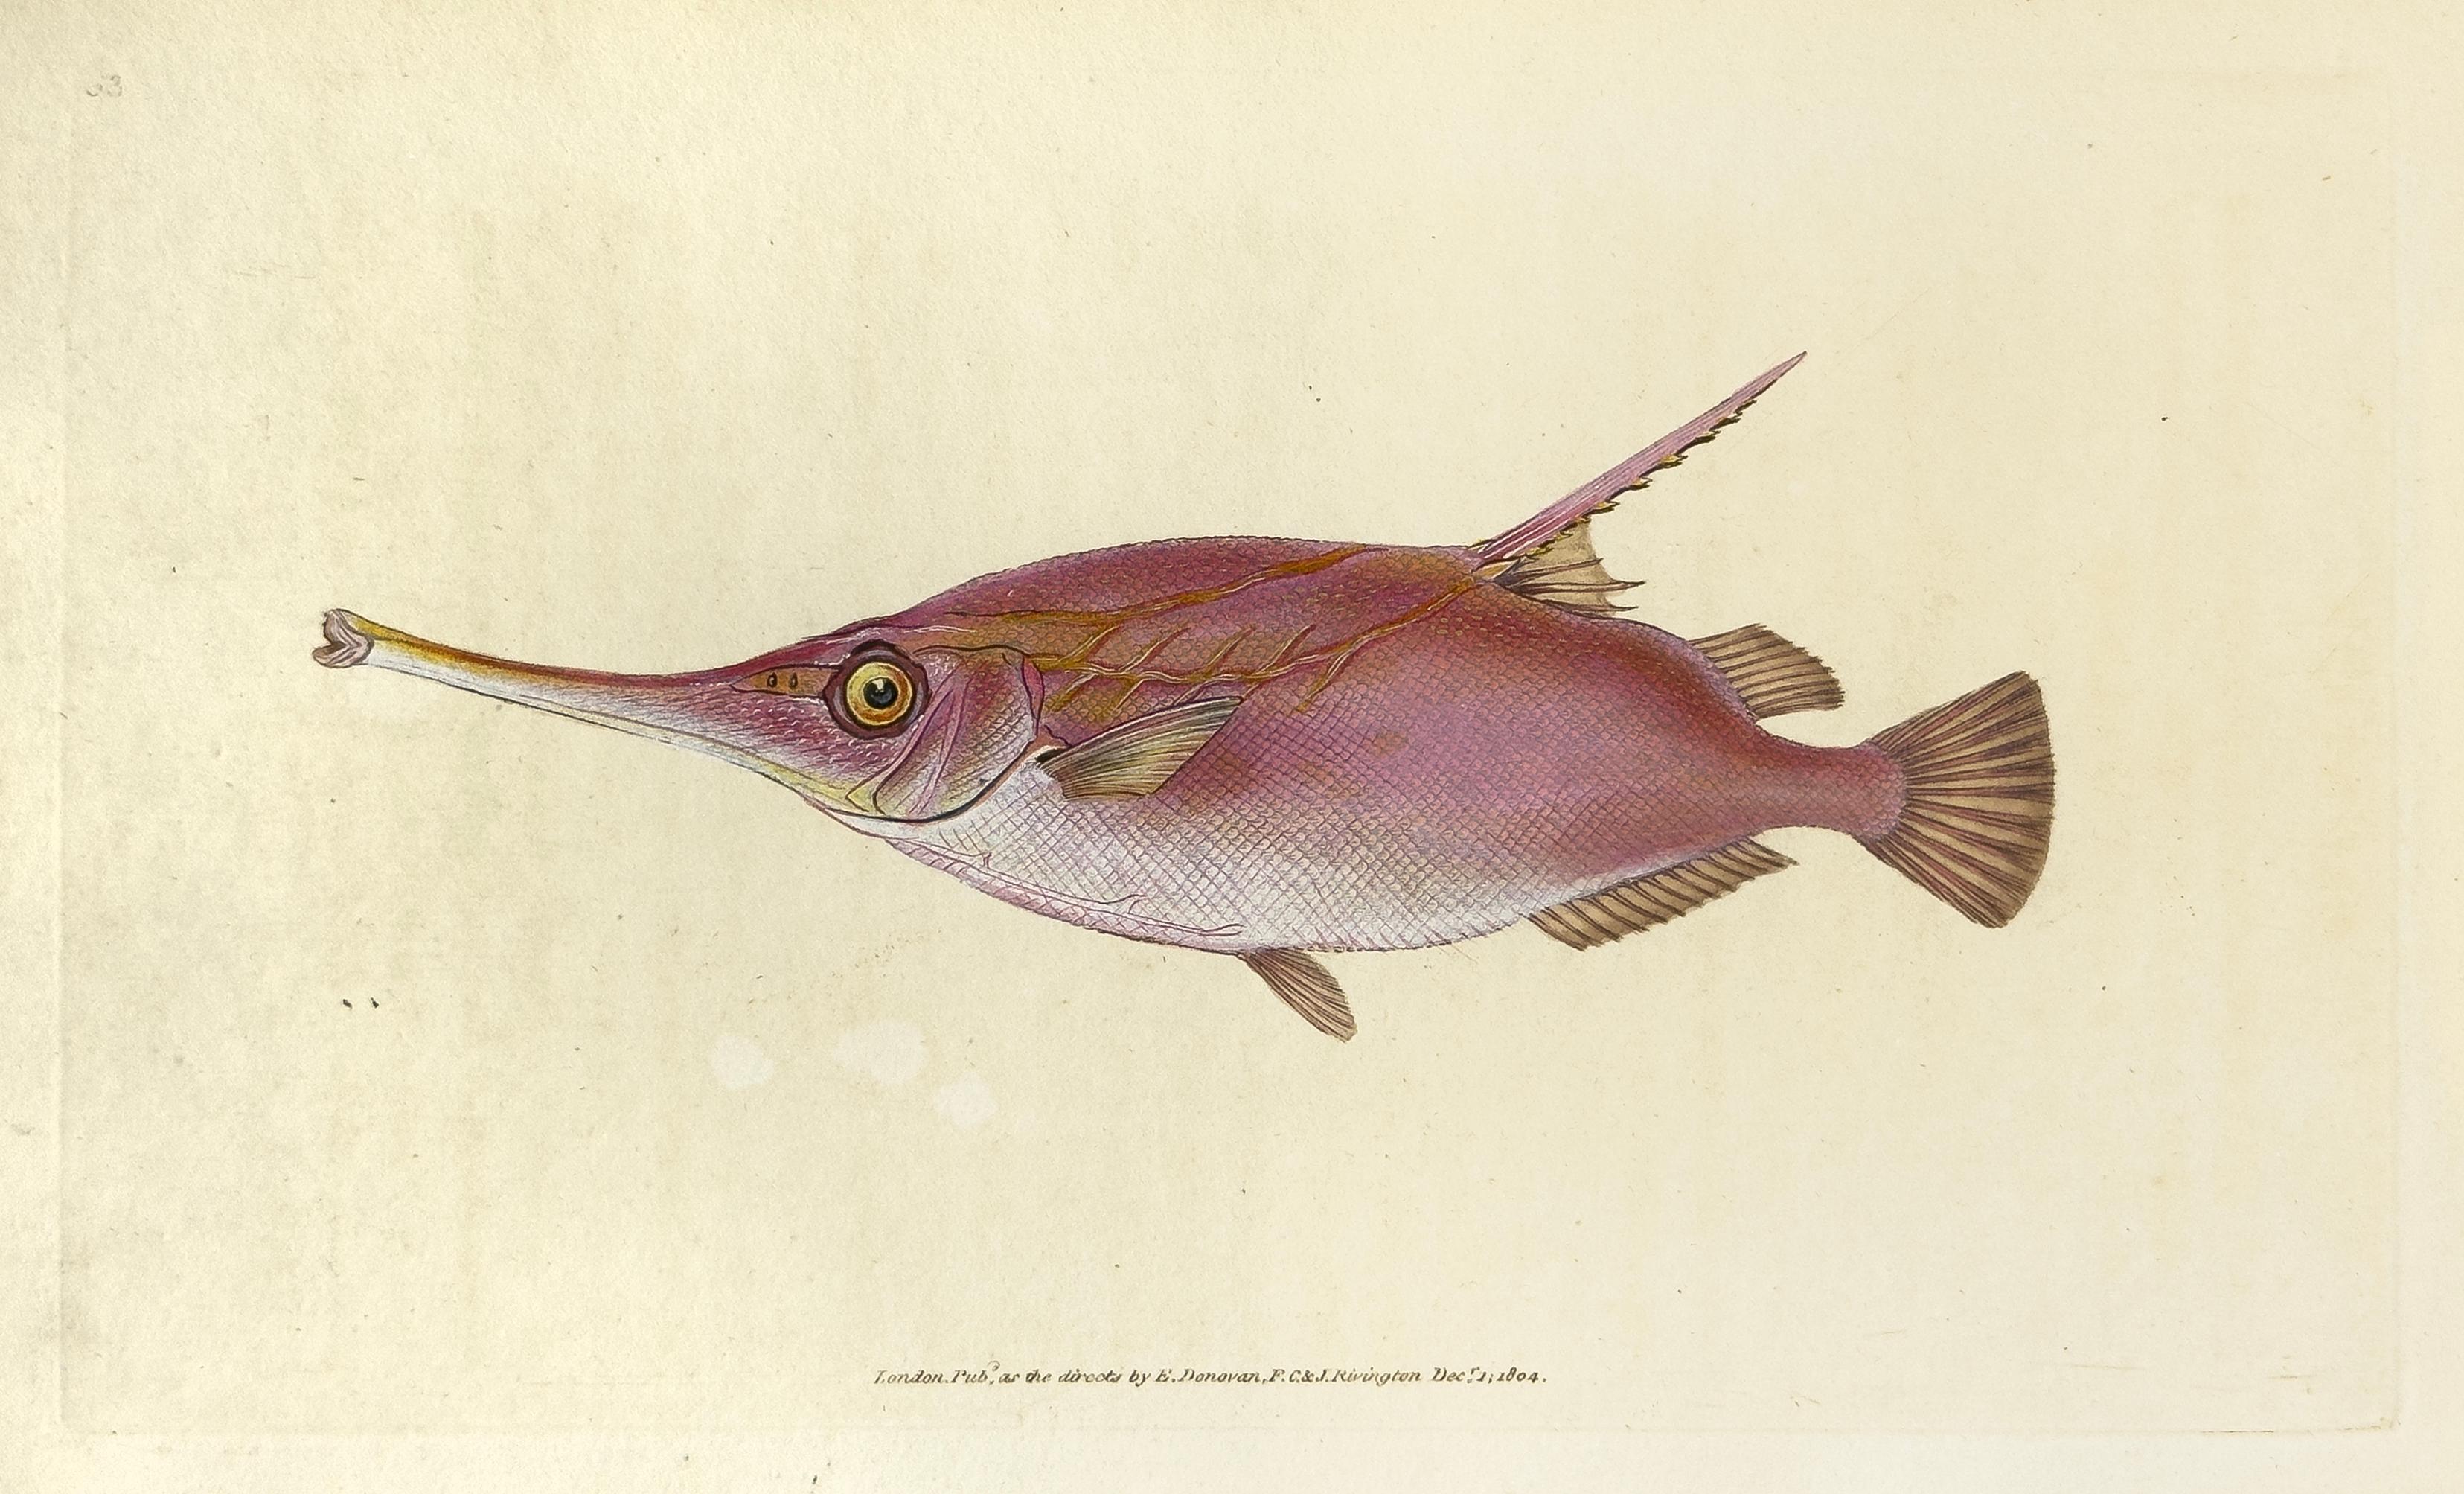 63: Centriscus Muschelax, Messer oder Trompetenfisch Fisch